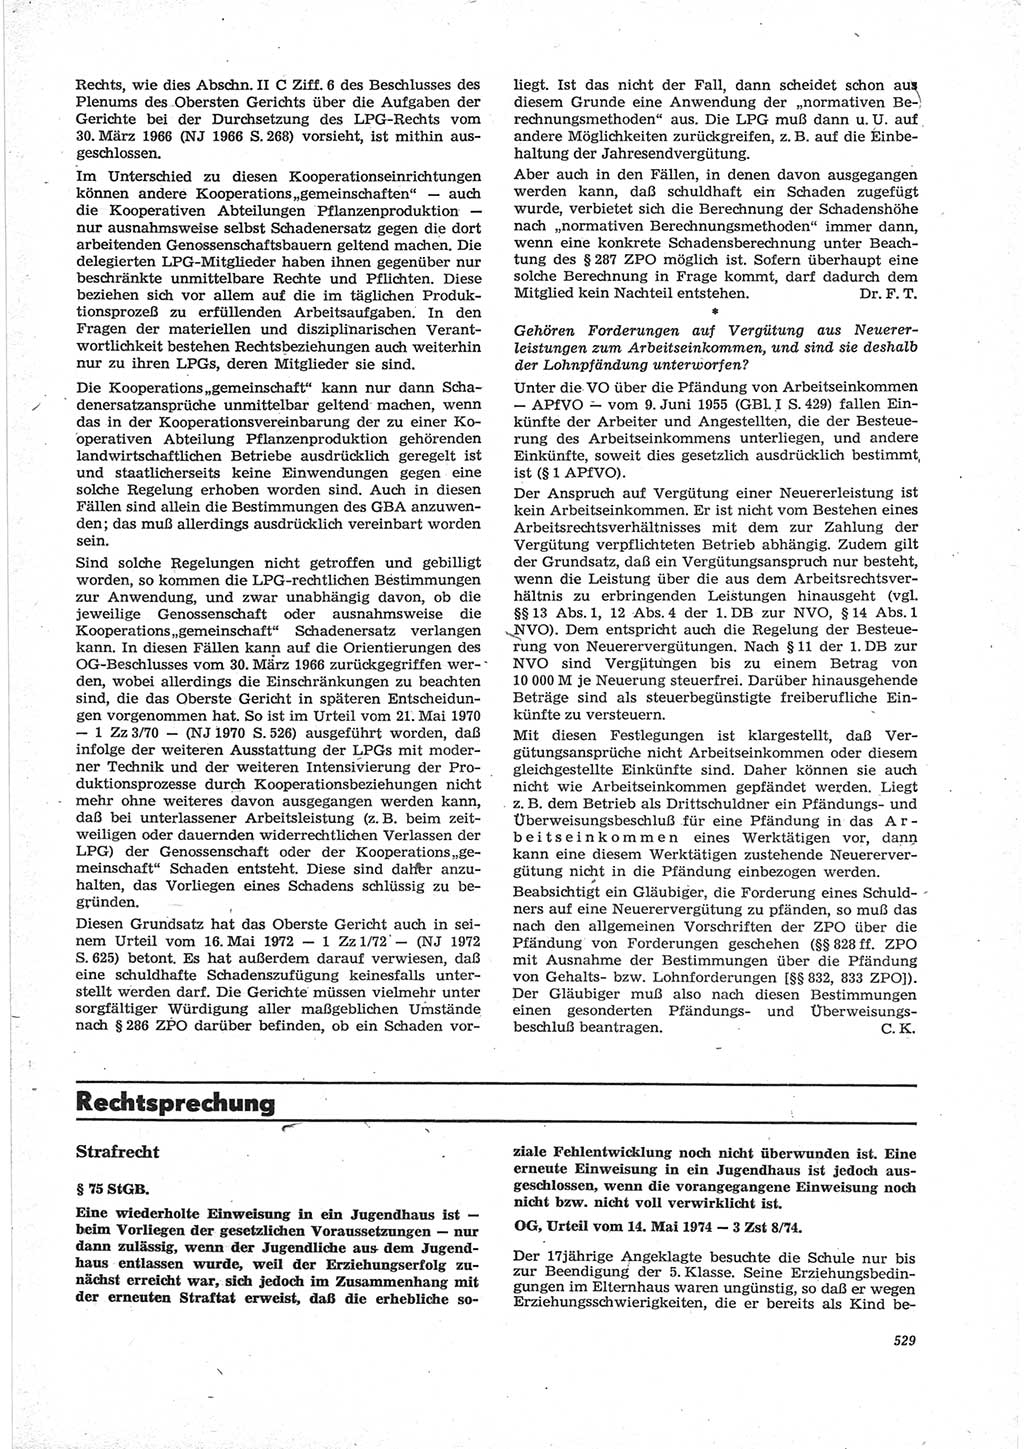 Neue Justiz (NJ), Zeitschrift für Recht und Rechtswissenschaft [Deutsche Demokratische Republik (DDR)], 28. Jahrgang 1974, Seite 529 (NJ DDR 1974, S. 529)